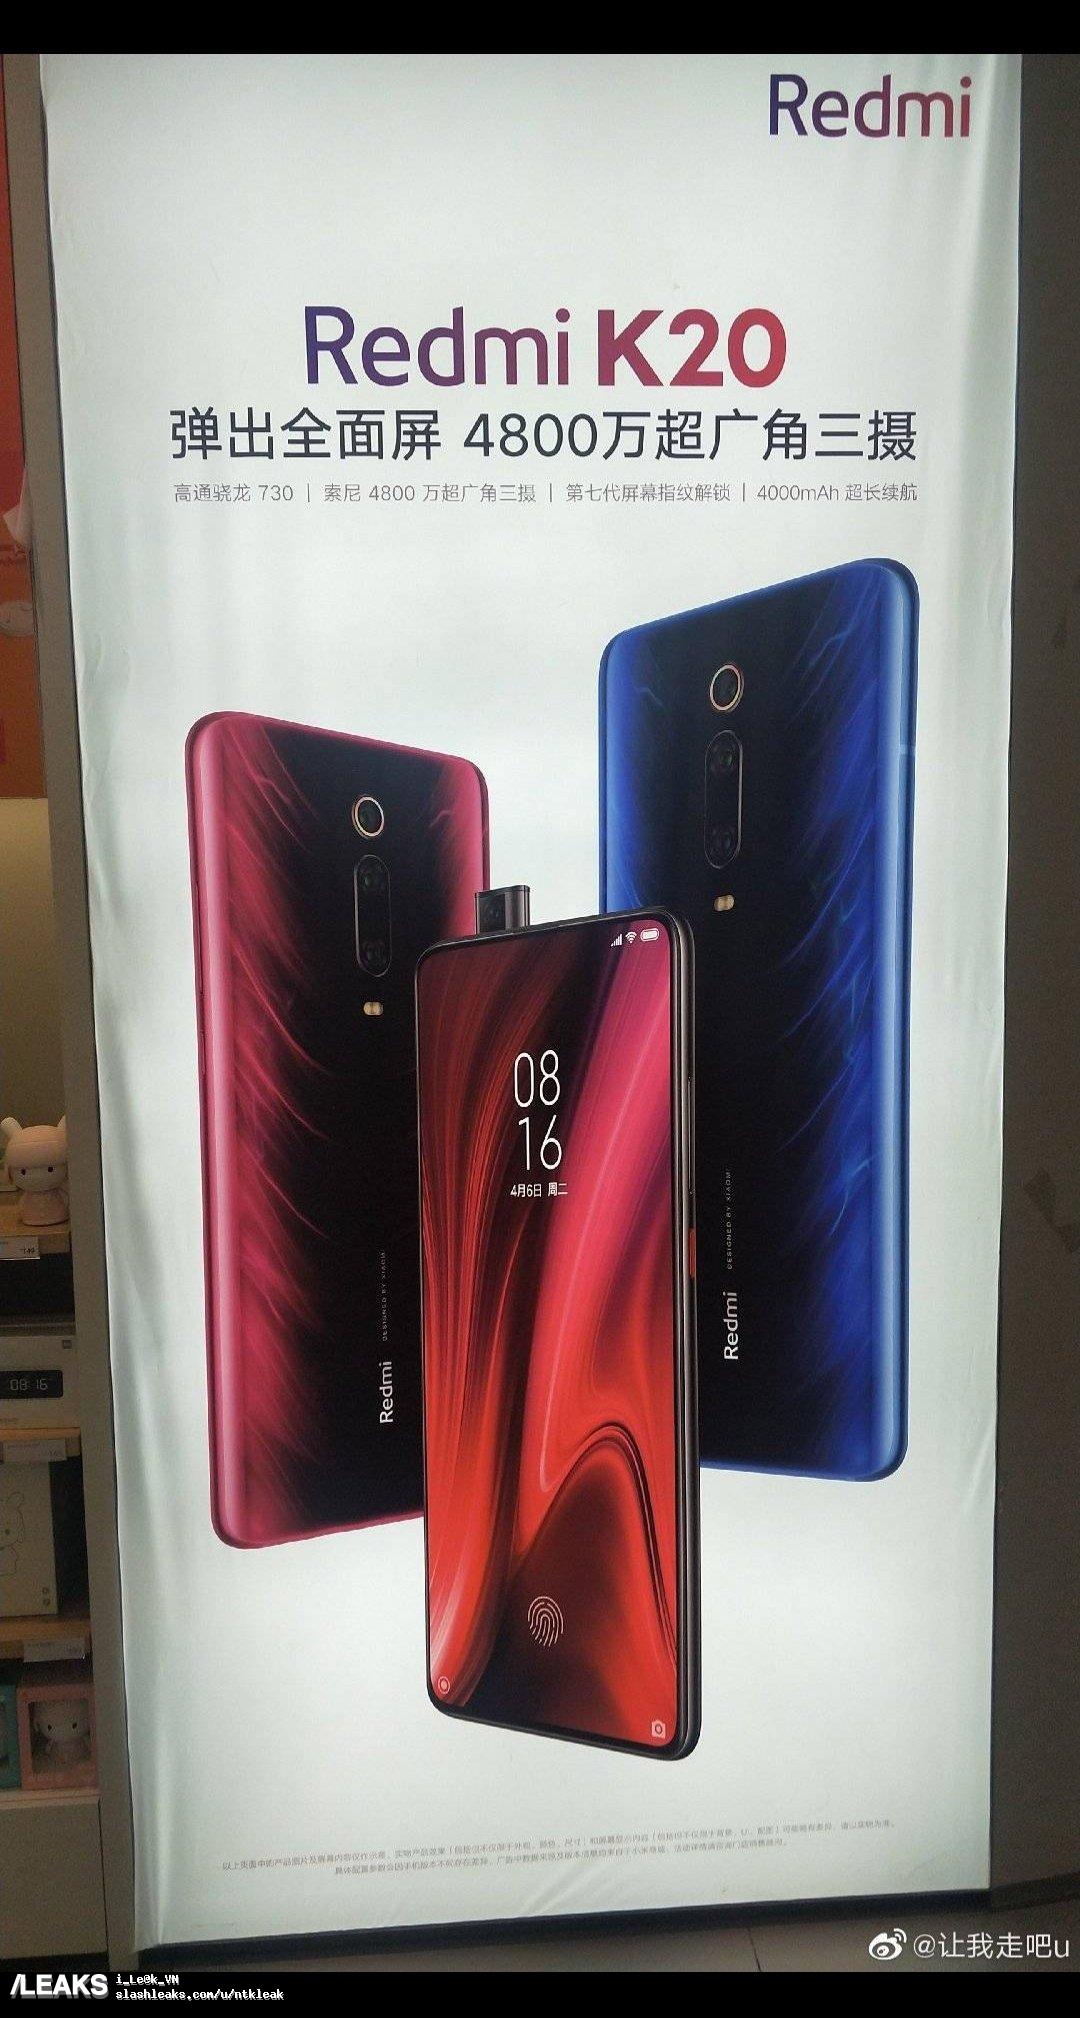 Xiaomi Mi 9T Redmi K20 plakat cena kiedy premiera specyfikacja technicxna opinie gdzie kupić najtaniej w Polsce